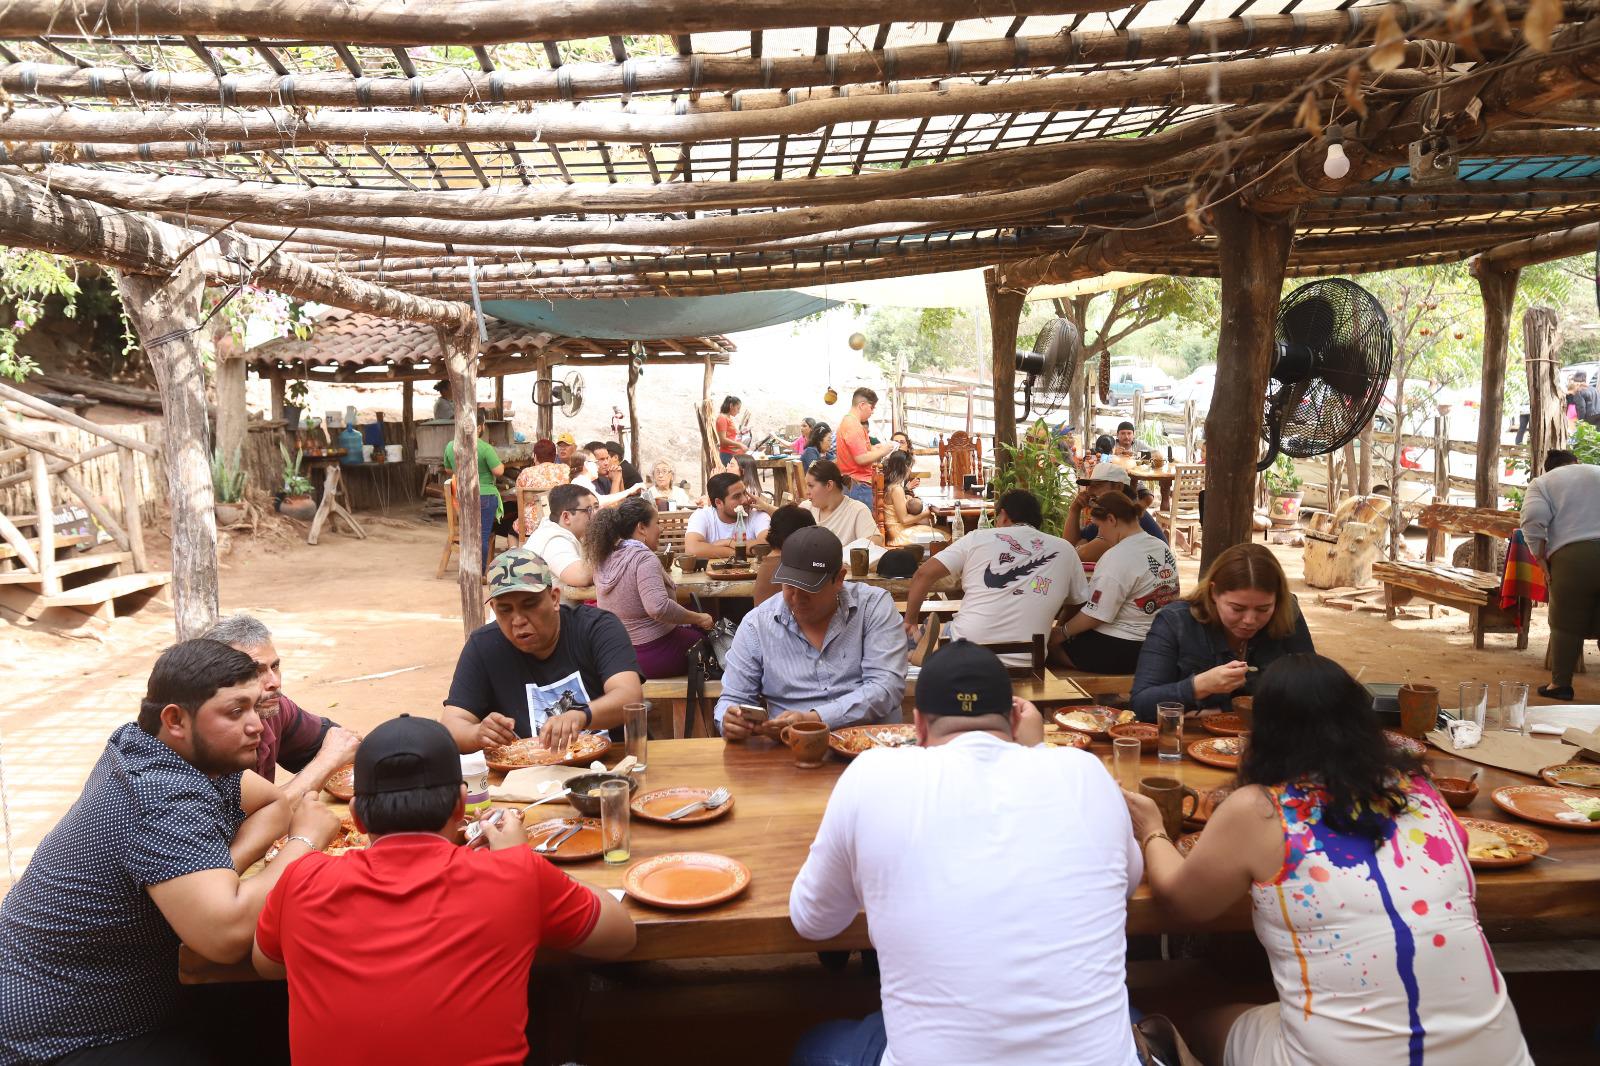 $!El restaurante El Sazón de la Abuela Tina está ubicado a tan solo unos metros del arco de la entrada al Pueblo Señorial de La Noria, en el corredor gastronómico El Habal-La Noria.